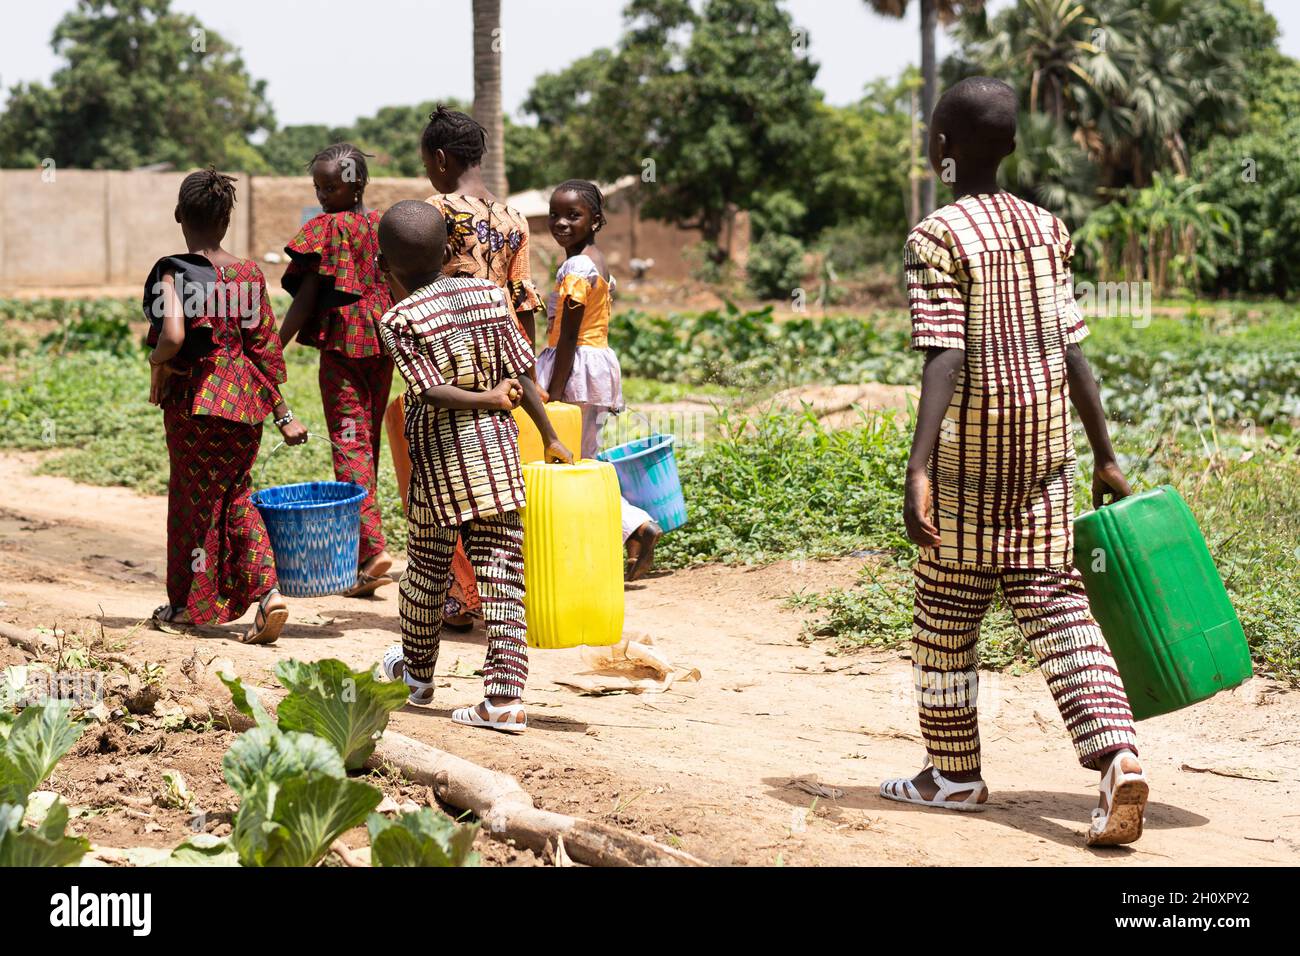 Eine Gruppe von schwarzafrikanischen Kindern, die leere Wasserbehälter auf dem Heimweg aus dem Dorf trugen, lange nachdem sie dabei geholfen hatten, die Hhelfelder zu bewässern Stockfoto